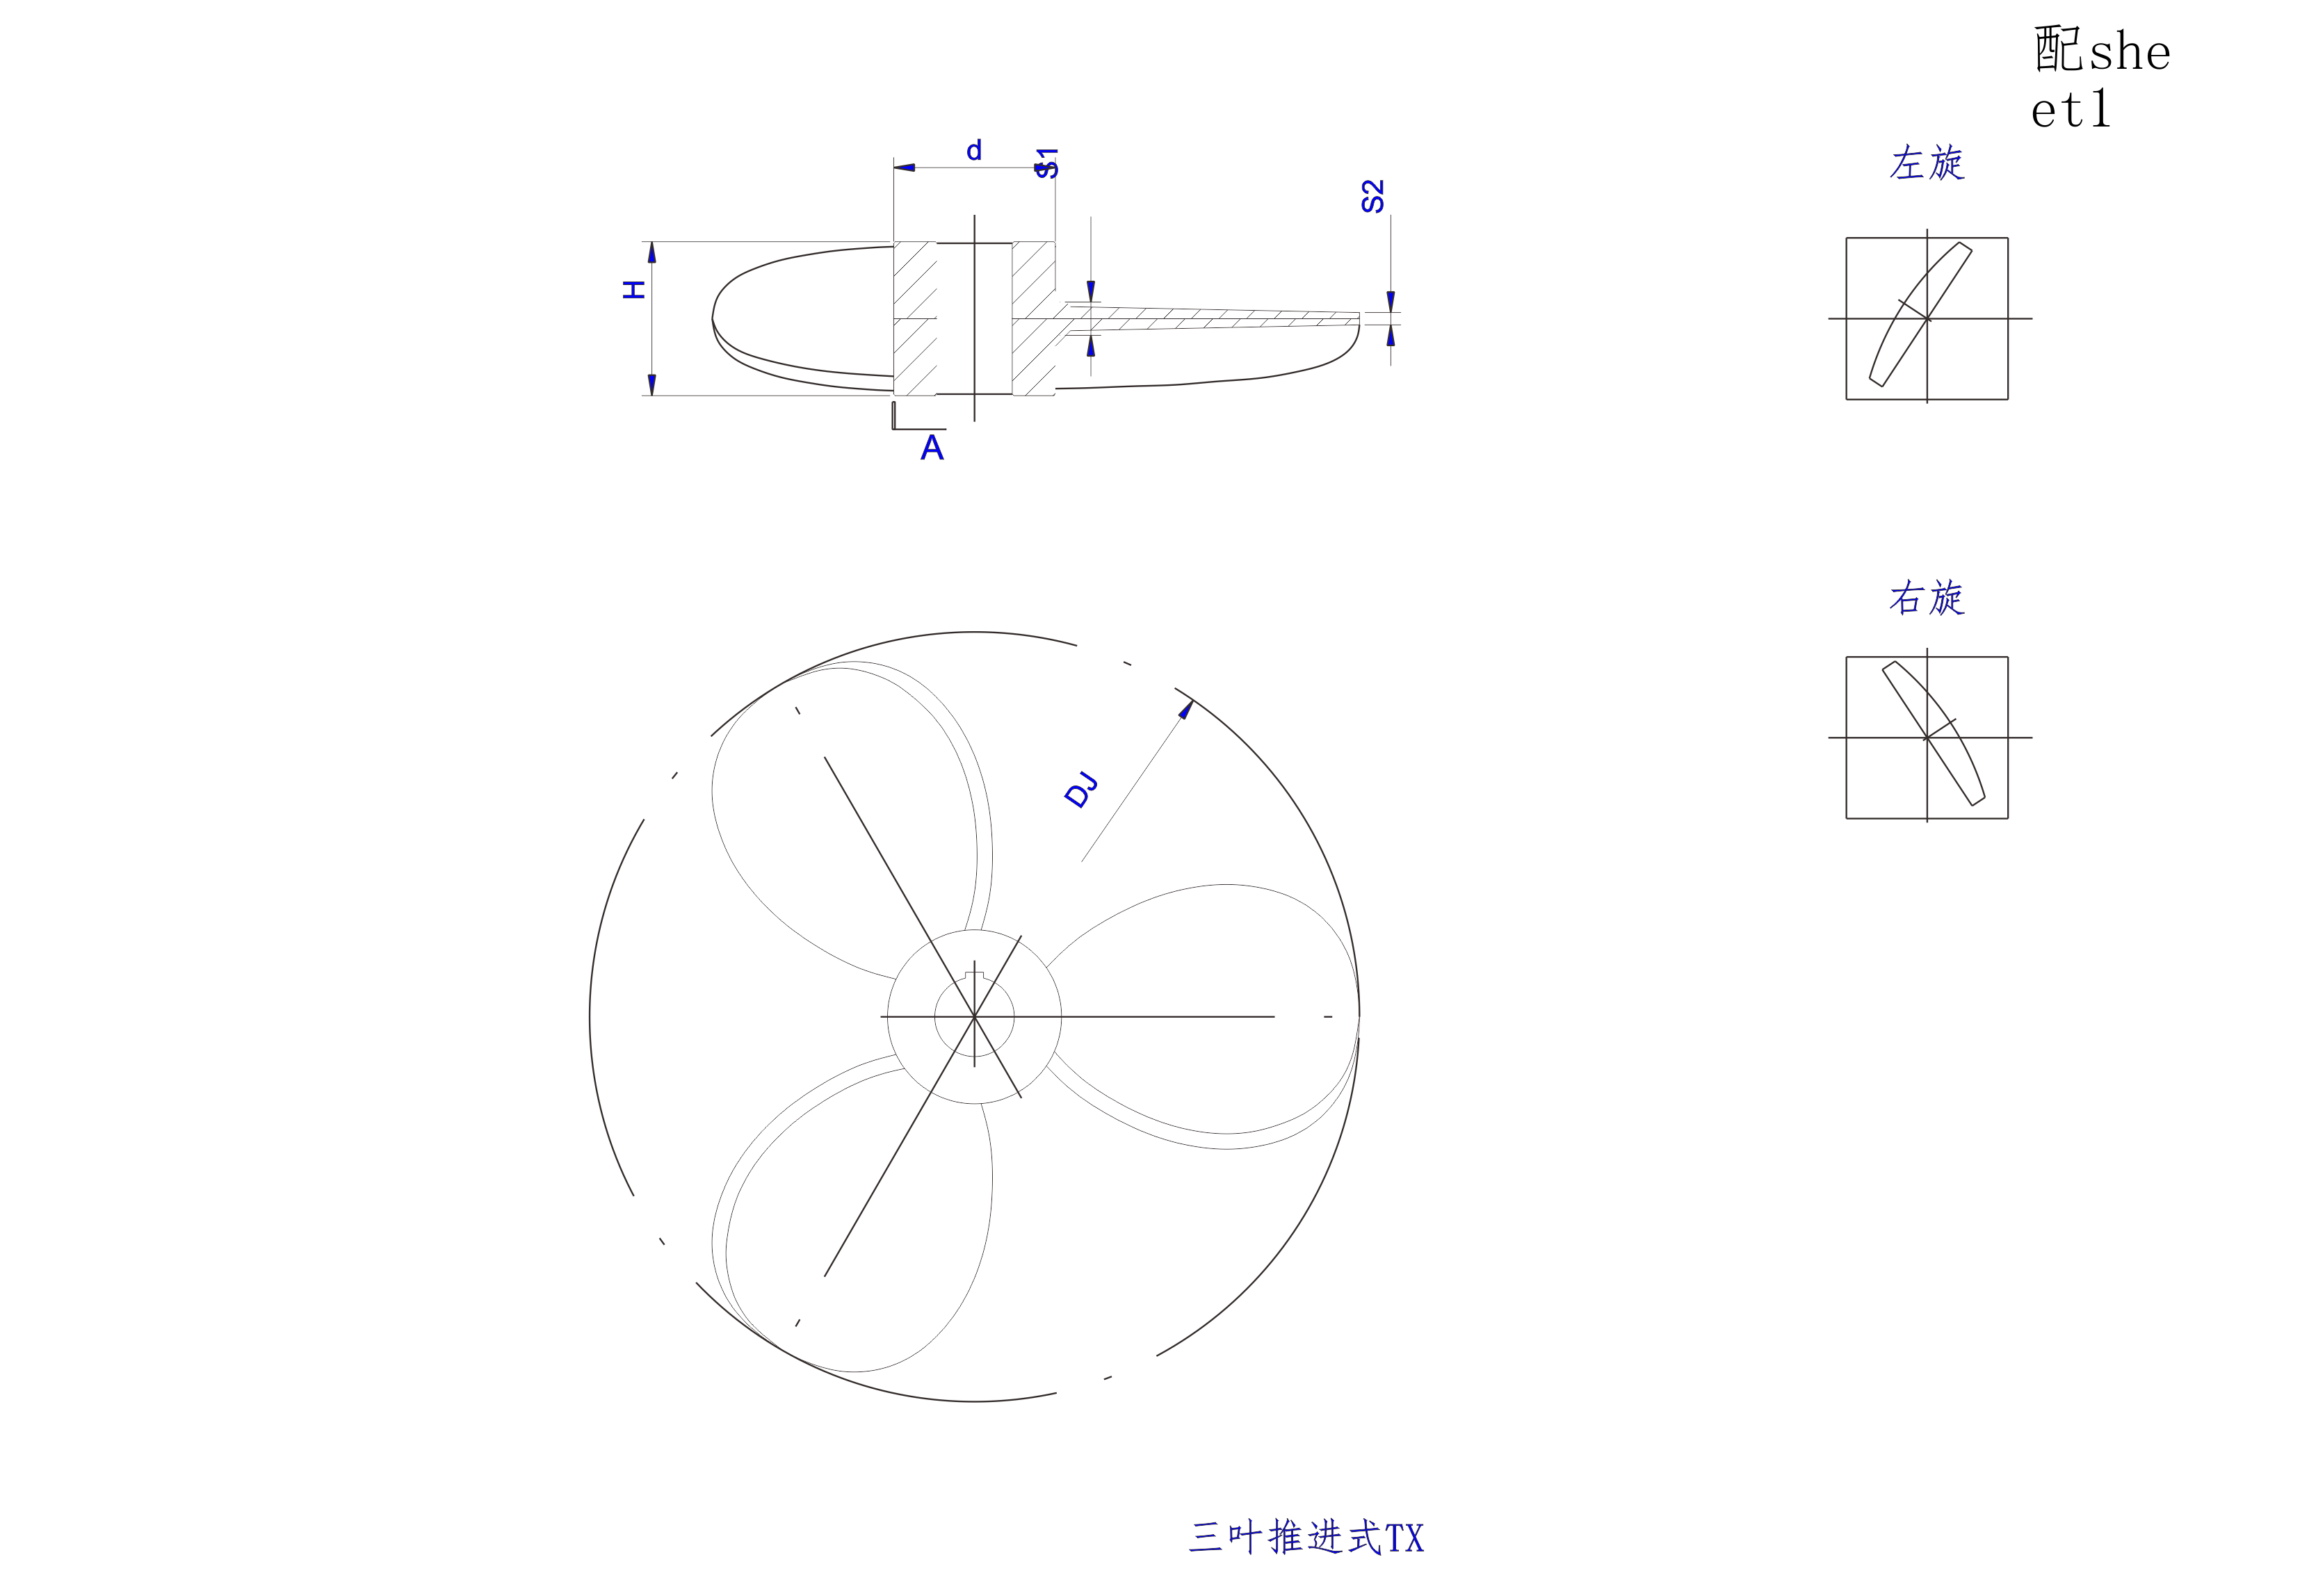   三叶推进式搅拌器设计图